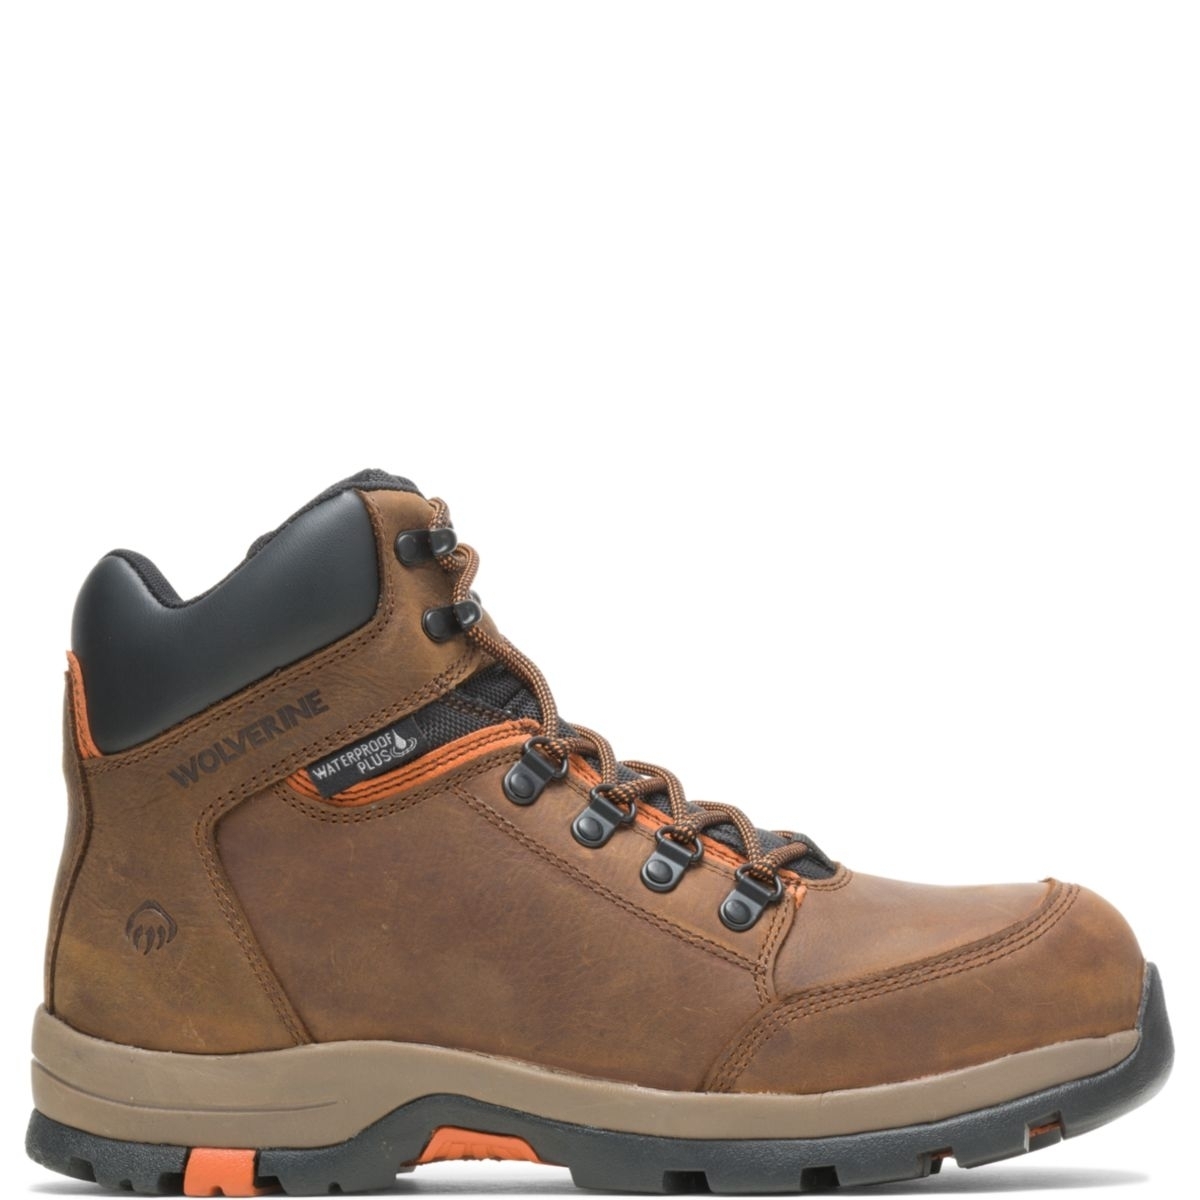 WOLVERINE Men's Grayson Steel Toe Waterproof Work Boot Brown - W211043 BROWN - BROWN, 9.5 X-Wide